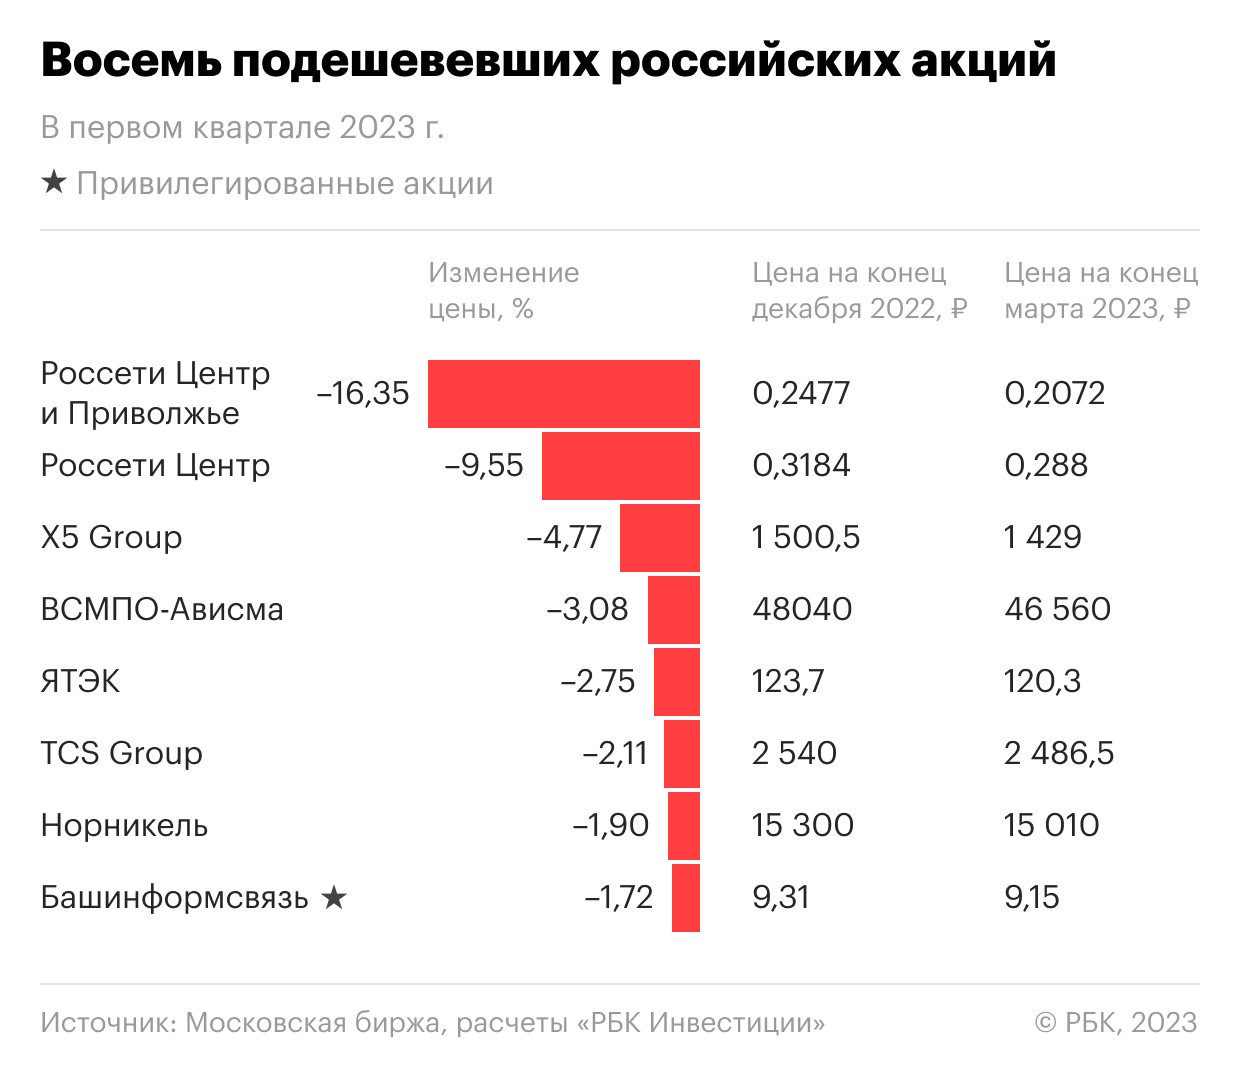 Восемь акций российских компаний, подешевевших в первом квартале 2023 года